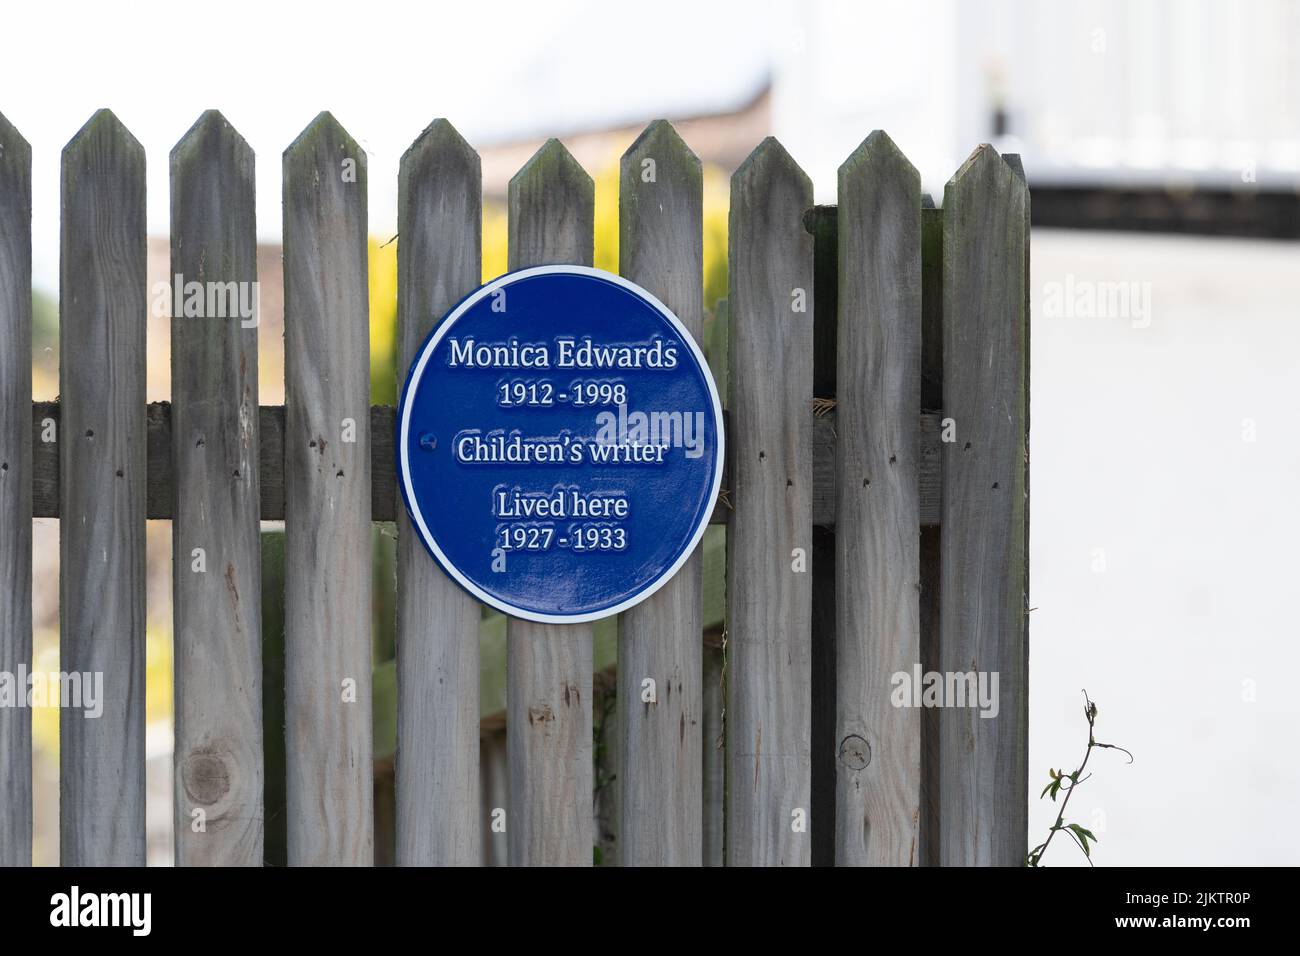 Monica Edwards Childrens writer Blue plaque à l'extérieur de la maison à Rye Harbour, Rye, East Sussex, Angleterre, Royaume-Uni Banque D'Images